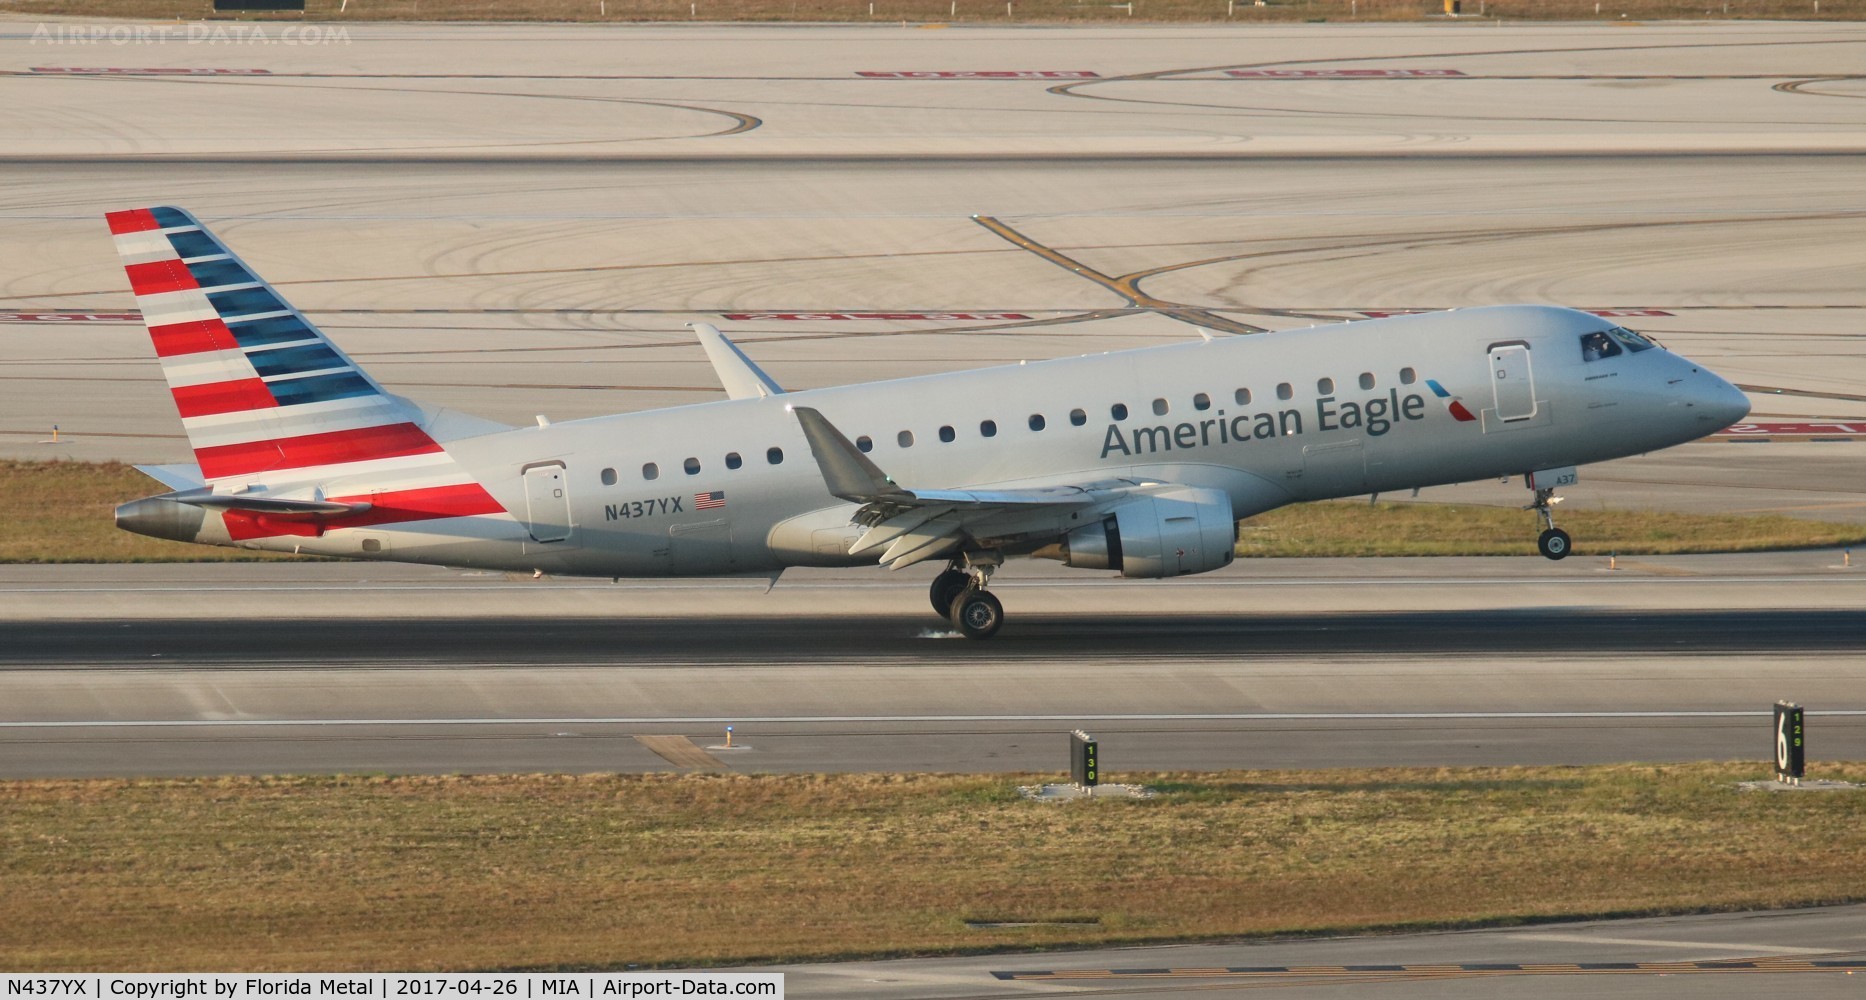 N437YX, 2014 Embraer 175LR (ERJ-170-200LR) C/N 17000366, American Eagle